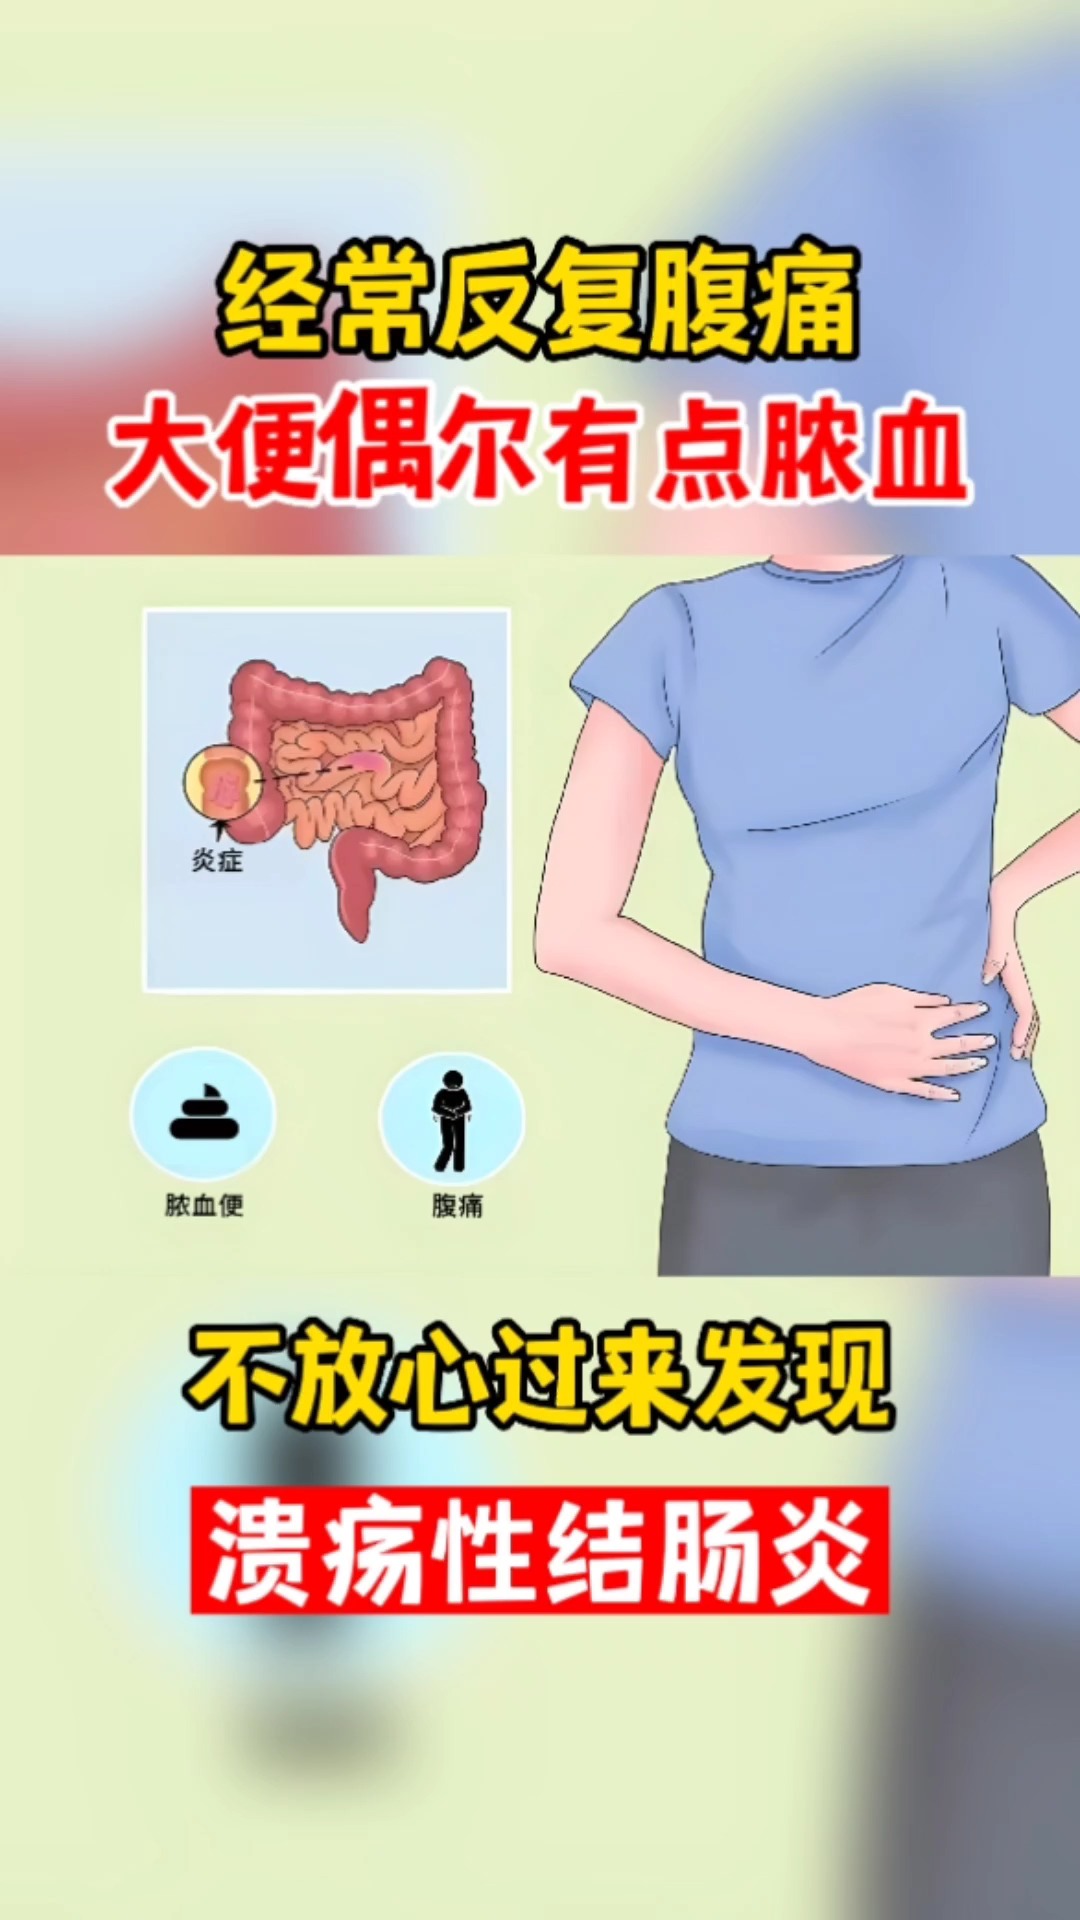 经常反复腹痛大便偶尔有点脓血不放心过来发现溃疡性结肠炎